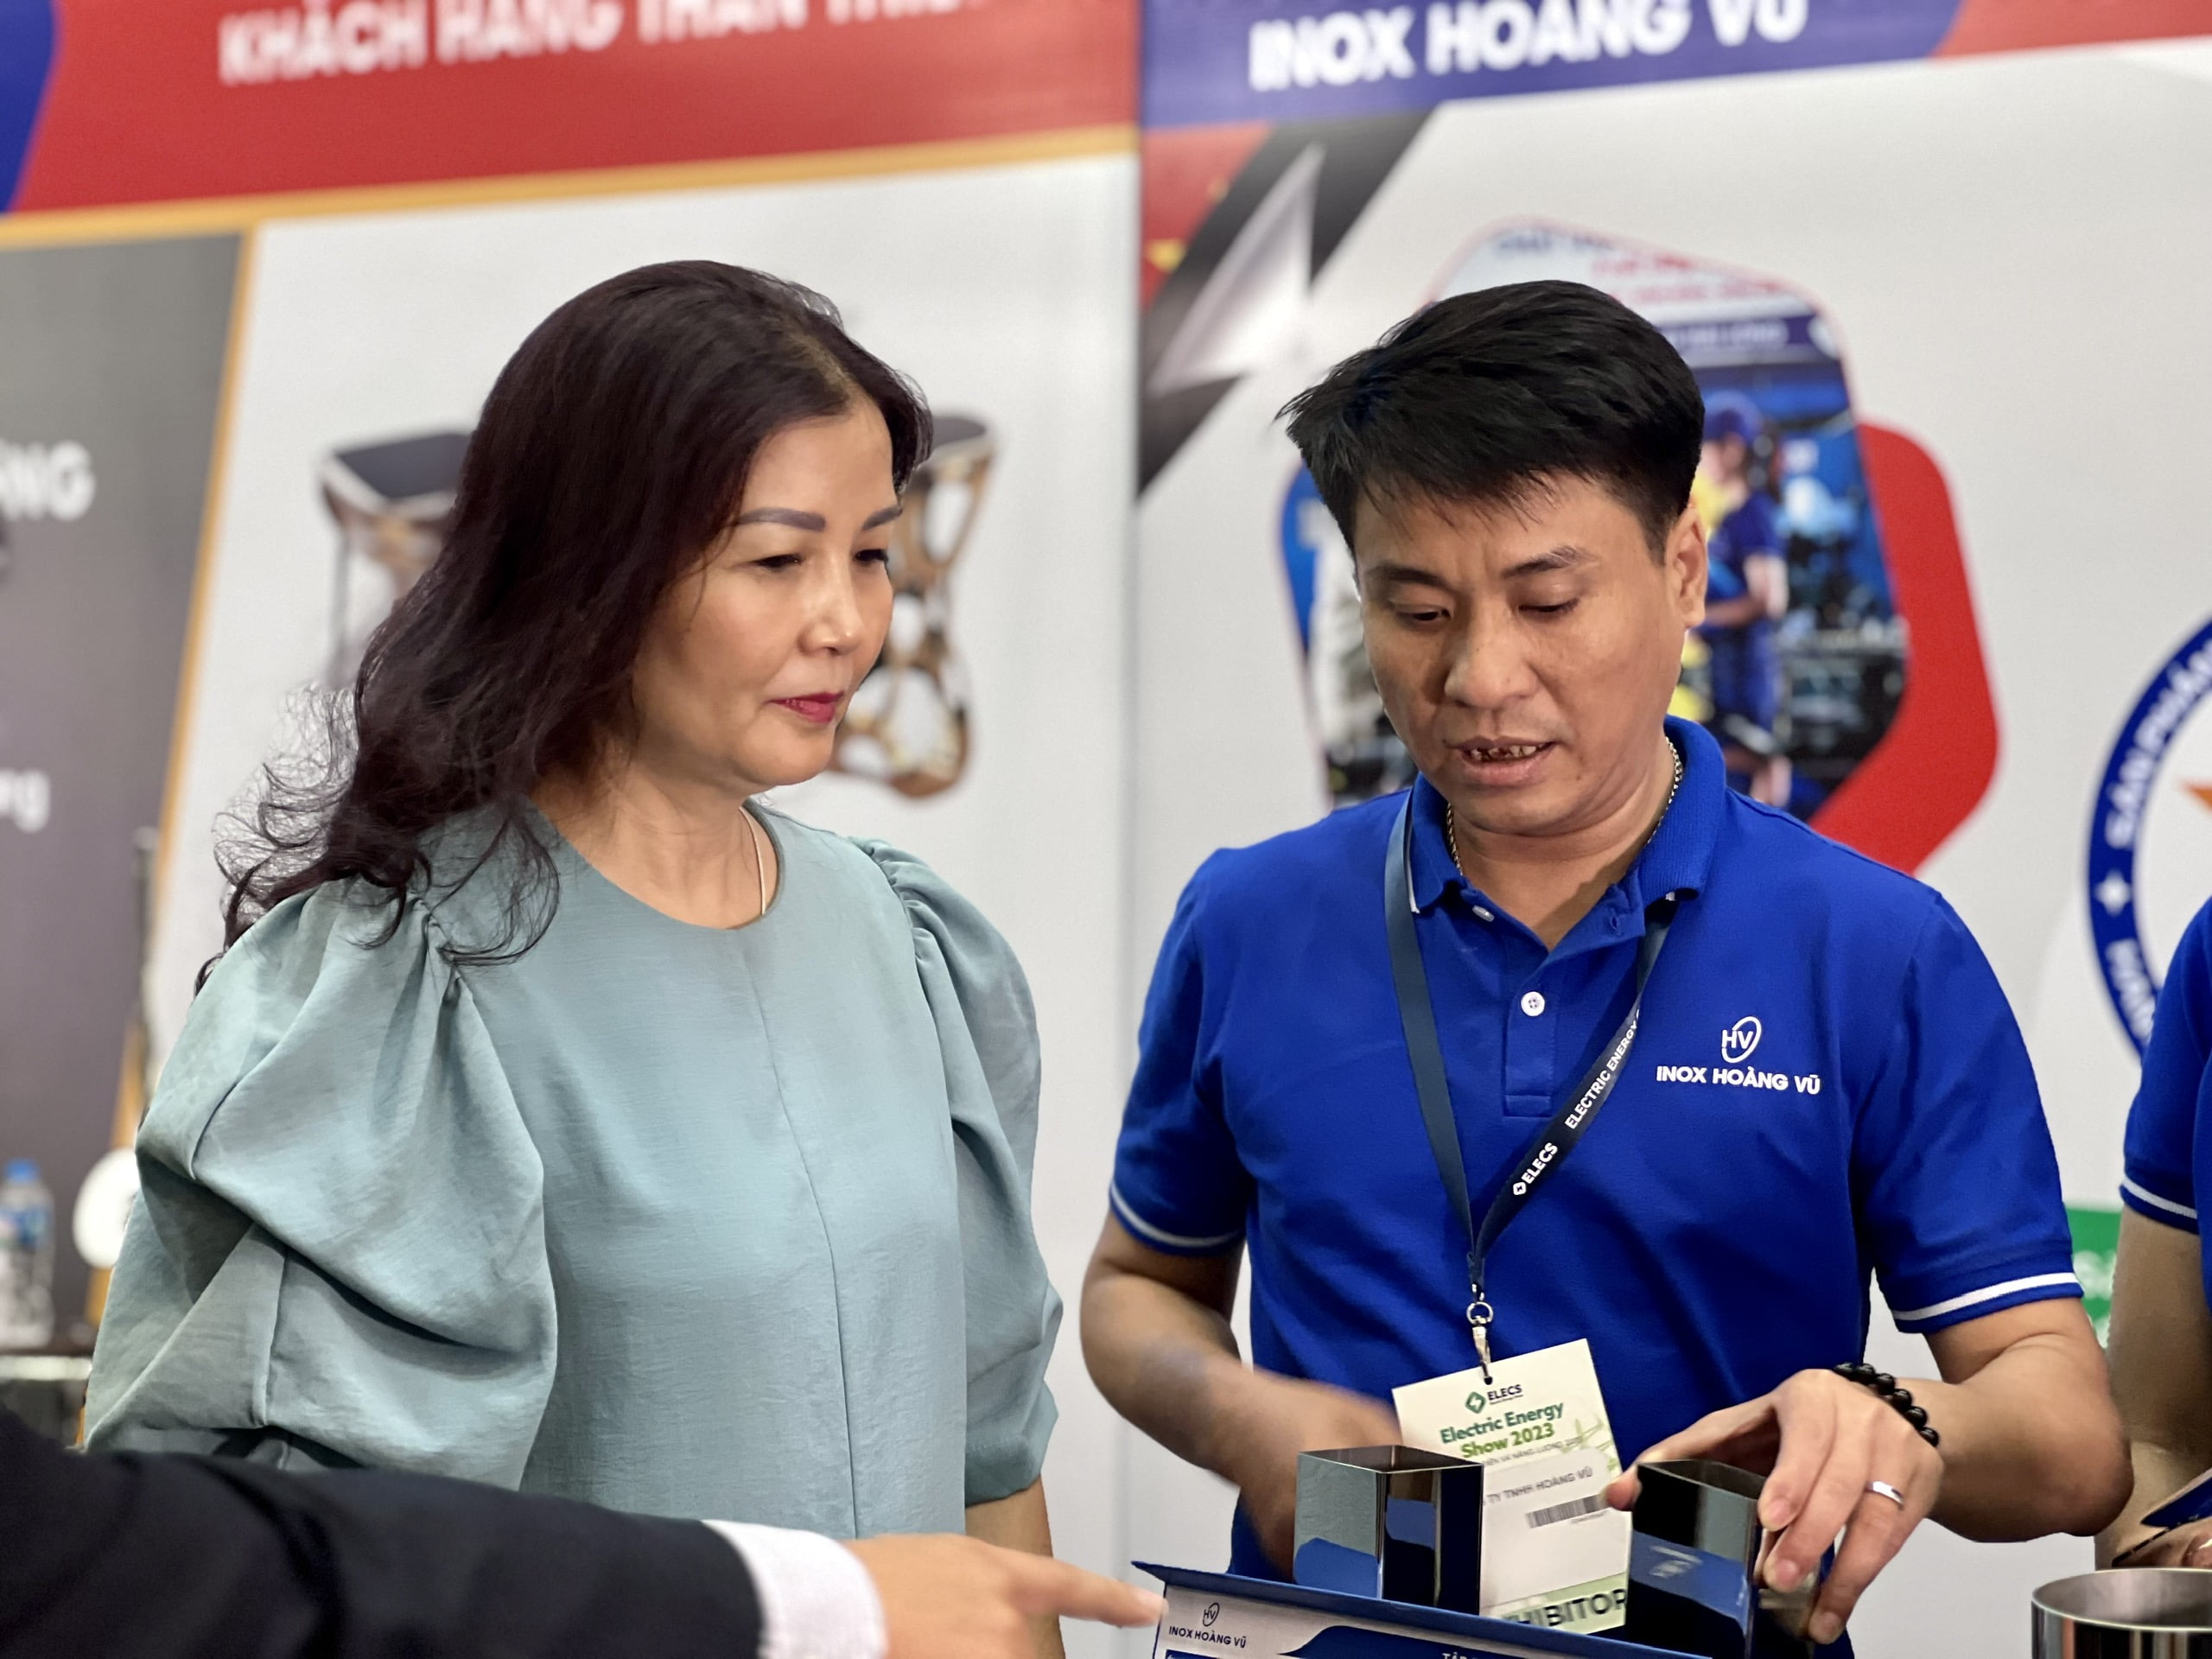 (Tiếng Việt) SPCNCL Hà Nội: Doanh nghiệp chủ lực tham gia Hội chợ sản phẩm công nghiệp, máy móc thiết bị và tự động hóa Hà Nội năm 2023